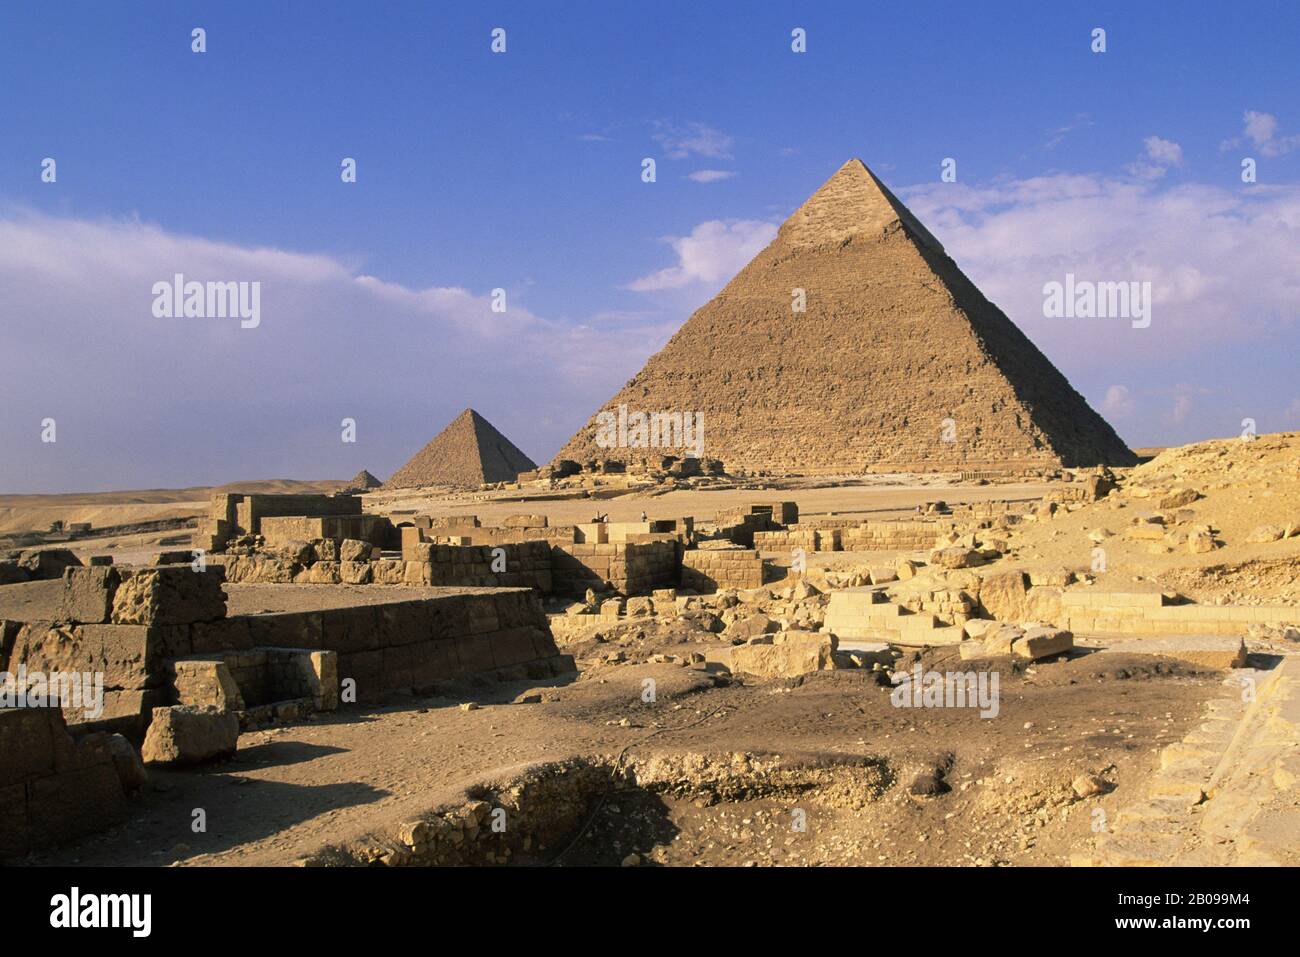 EGYPTE, LE CAIRE, GIZEH, VUE DE LA PYRAMIDE DE CHEPHREN ET DE LA PYRAMIDE DE MYCERINUS Banque D'Images